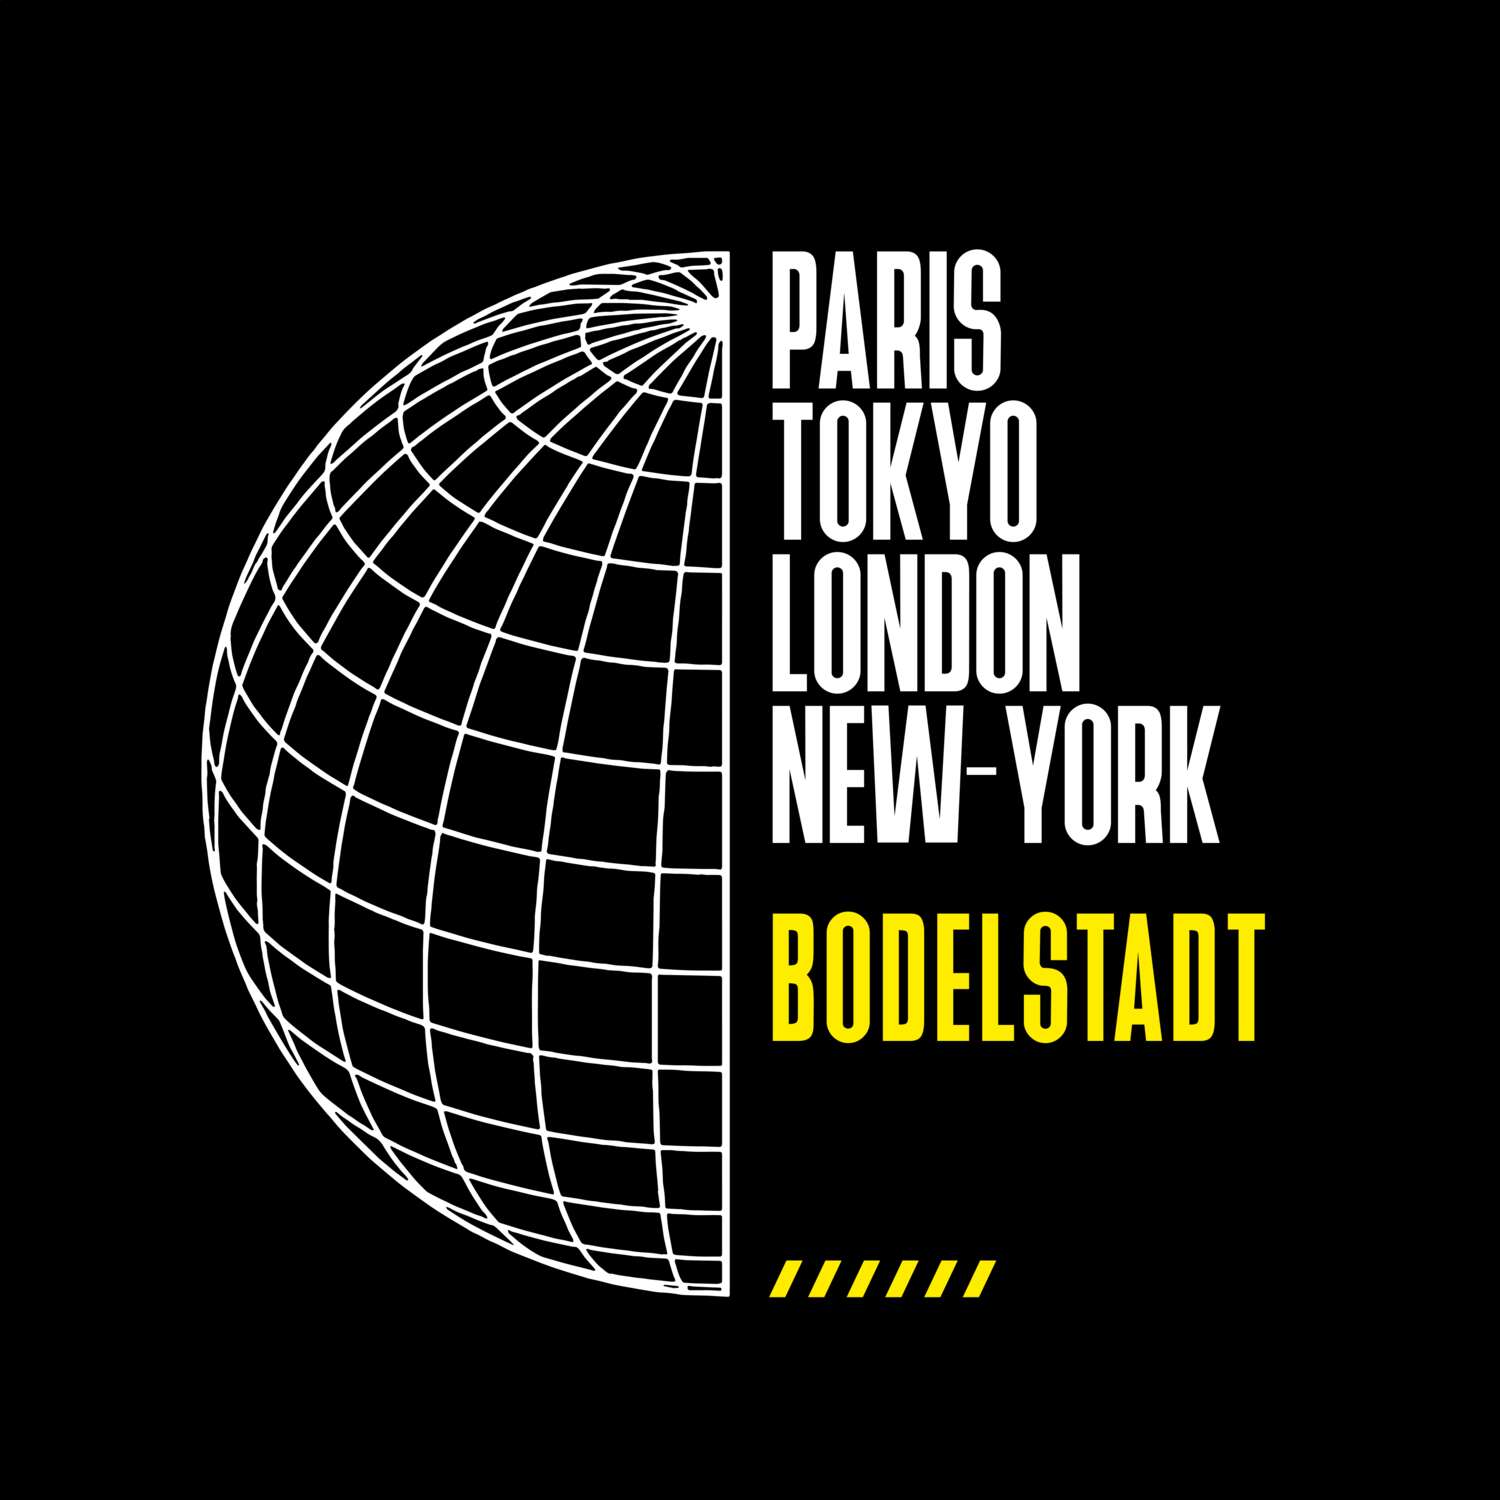 Bodelstadt T-Shirt »Paris Tokyo London«